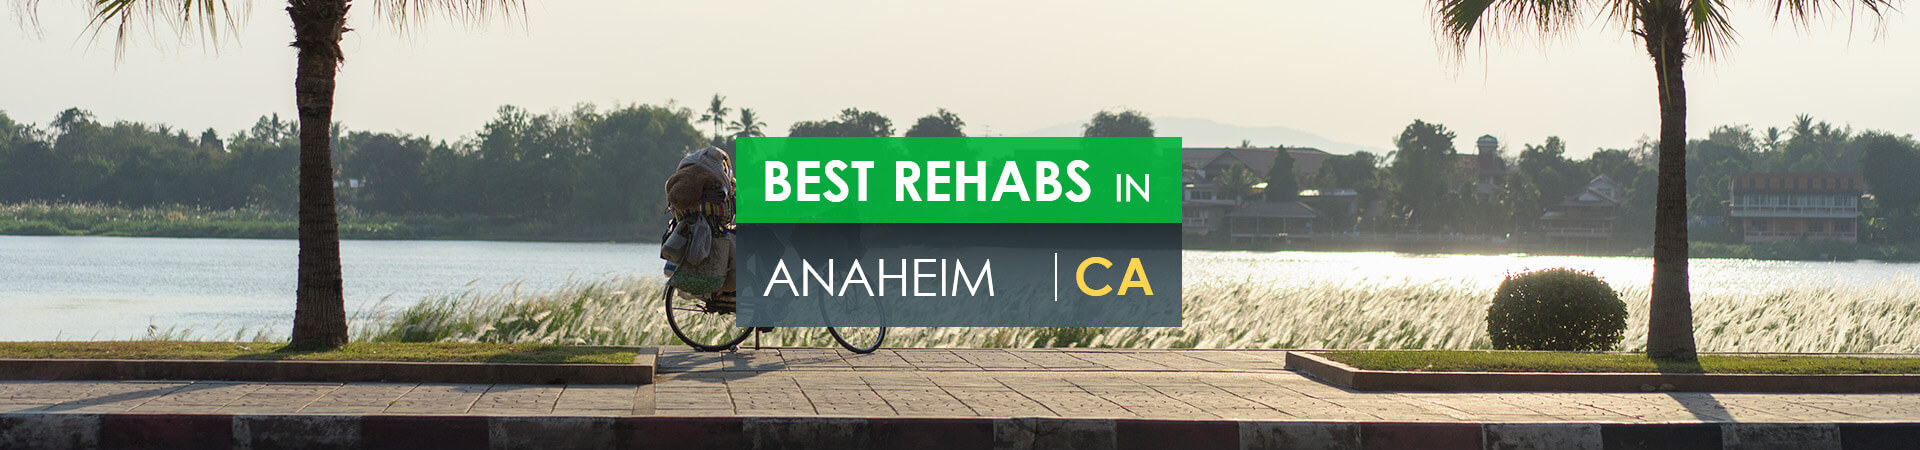 Best rehabs in Anaheim, CA